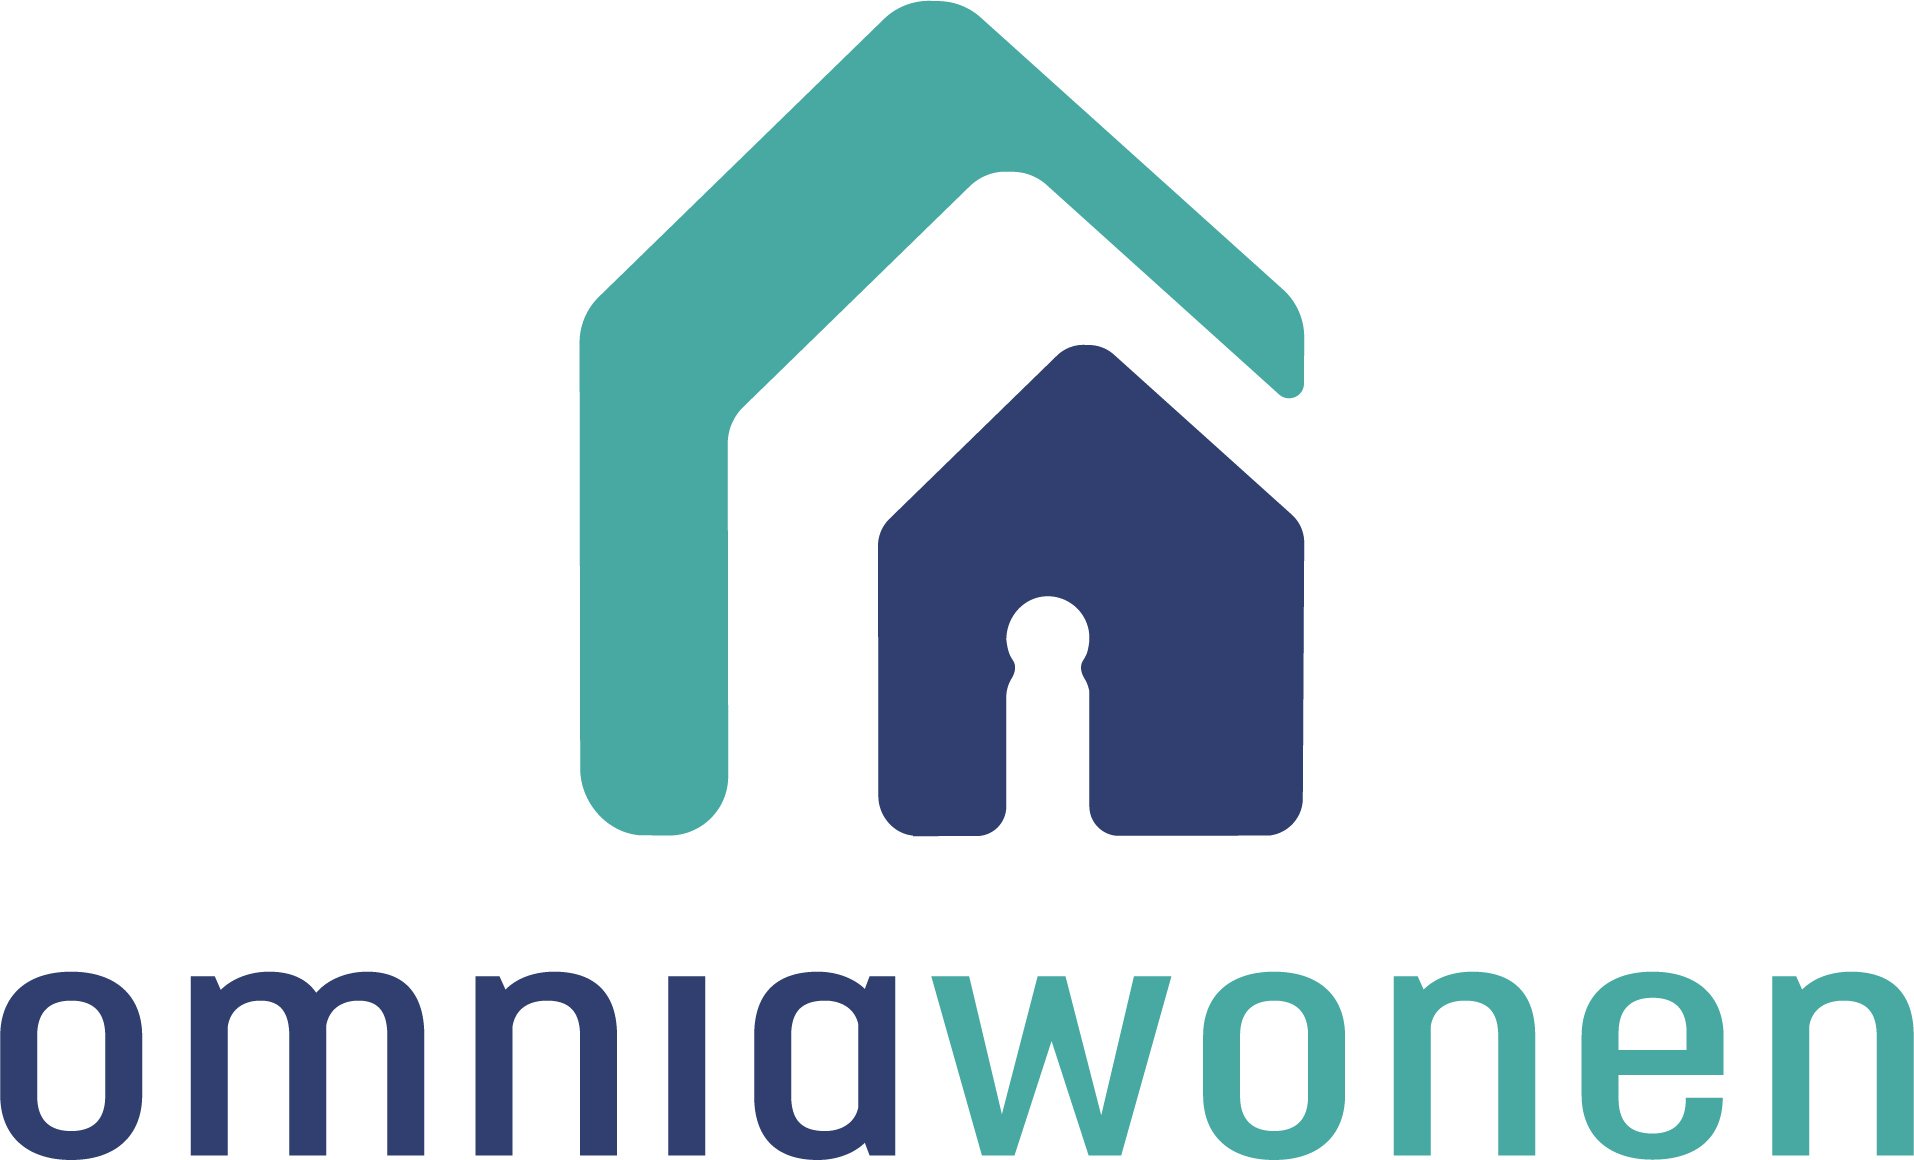 Logo Omnia Wonen